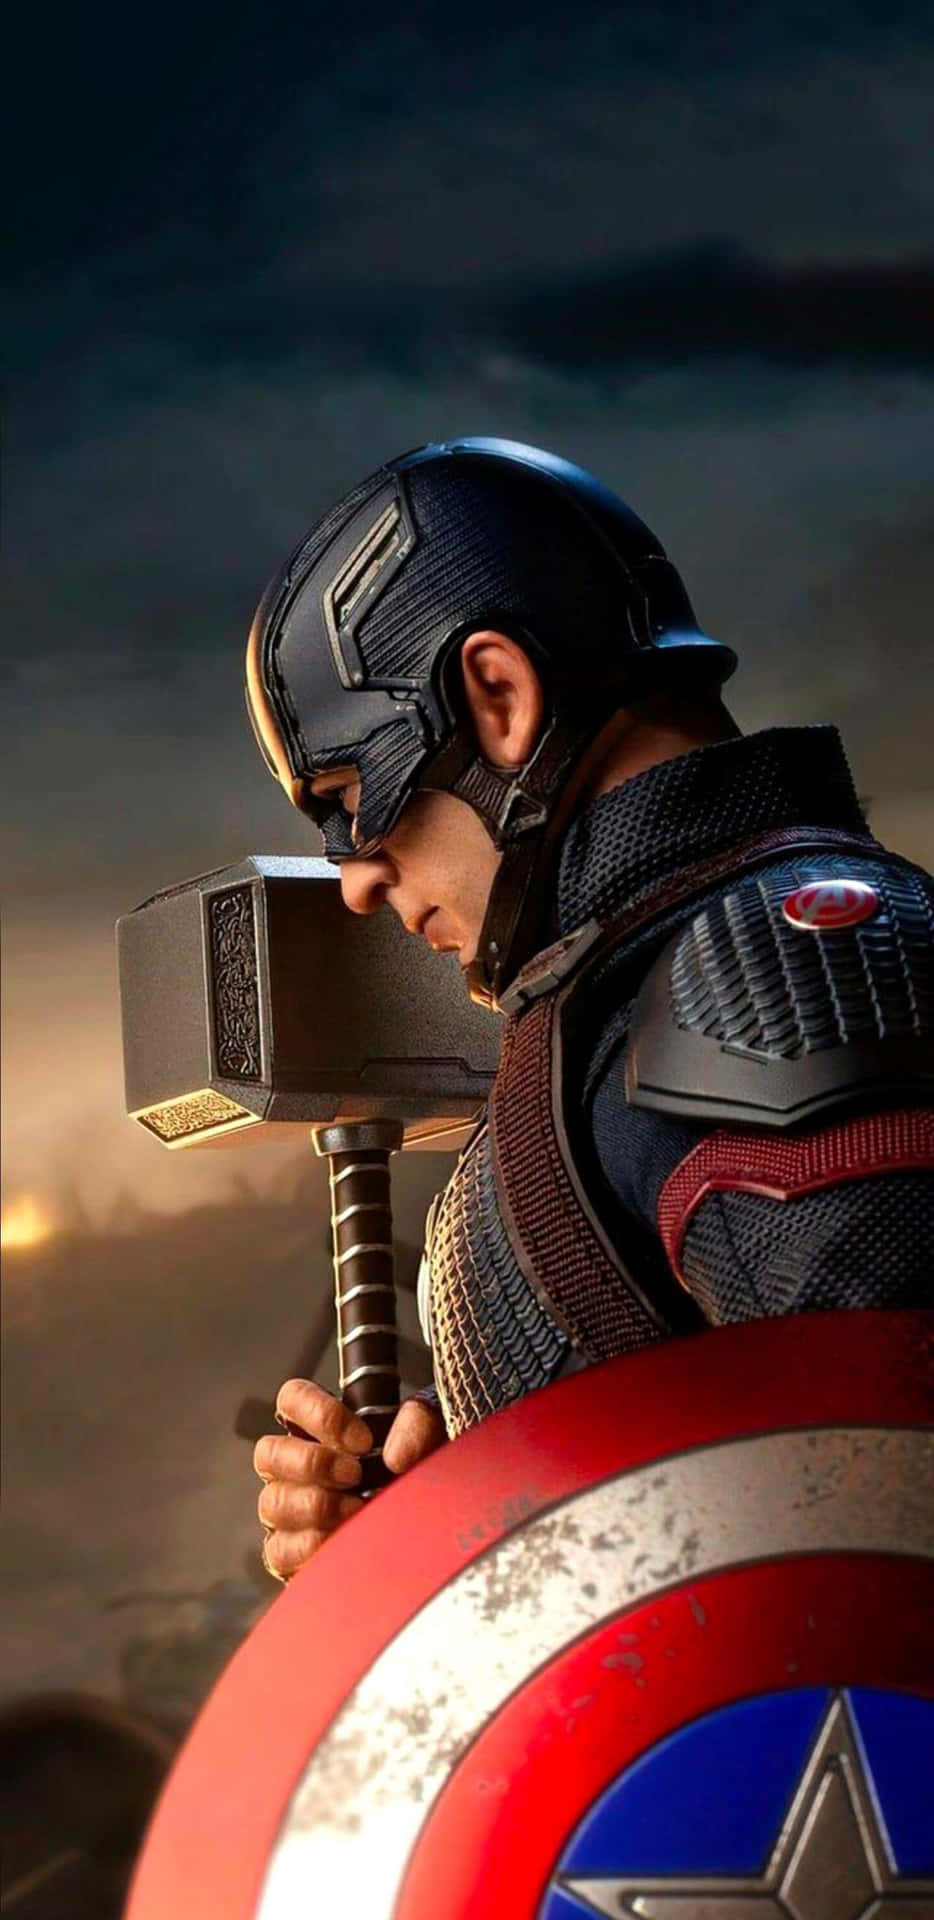 Fondode Pantalla De Capitán América Del Pixel 3 Xl De Avengers Endgame.